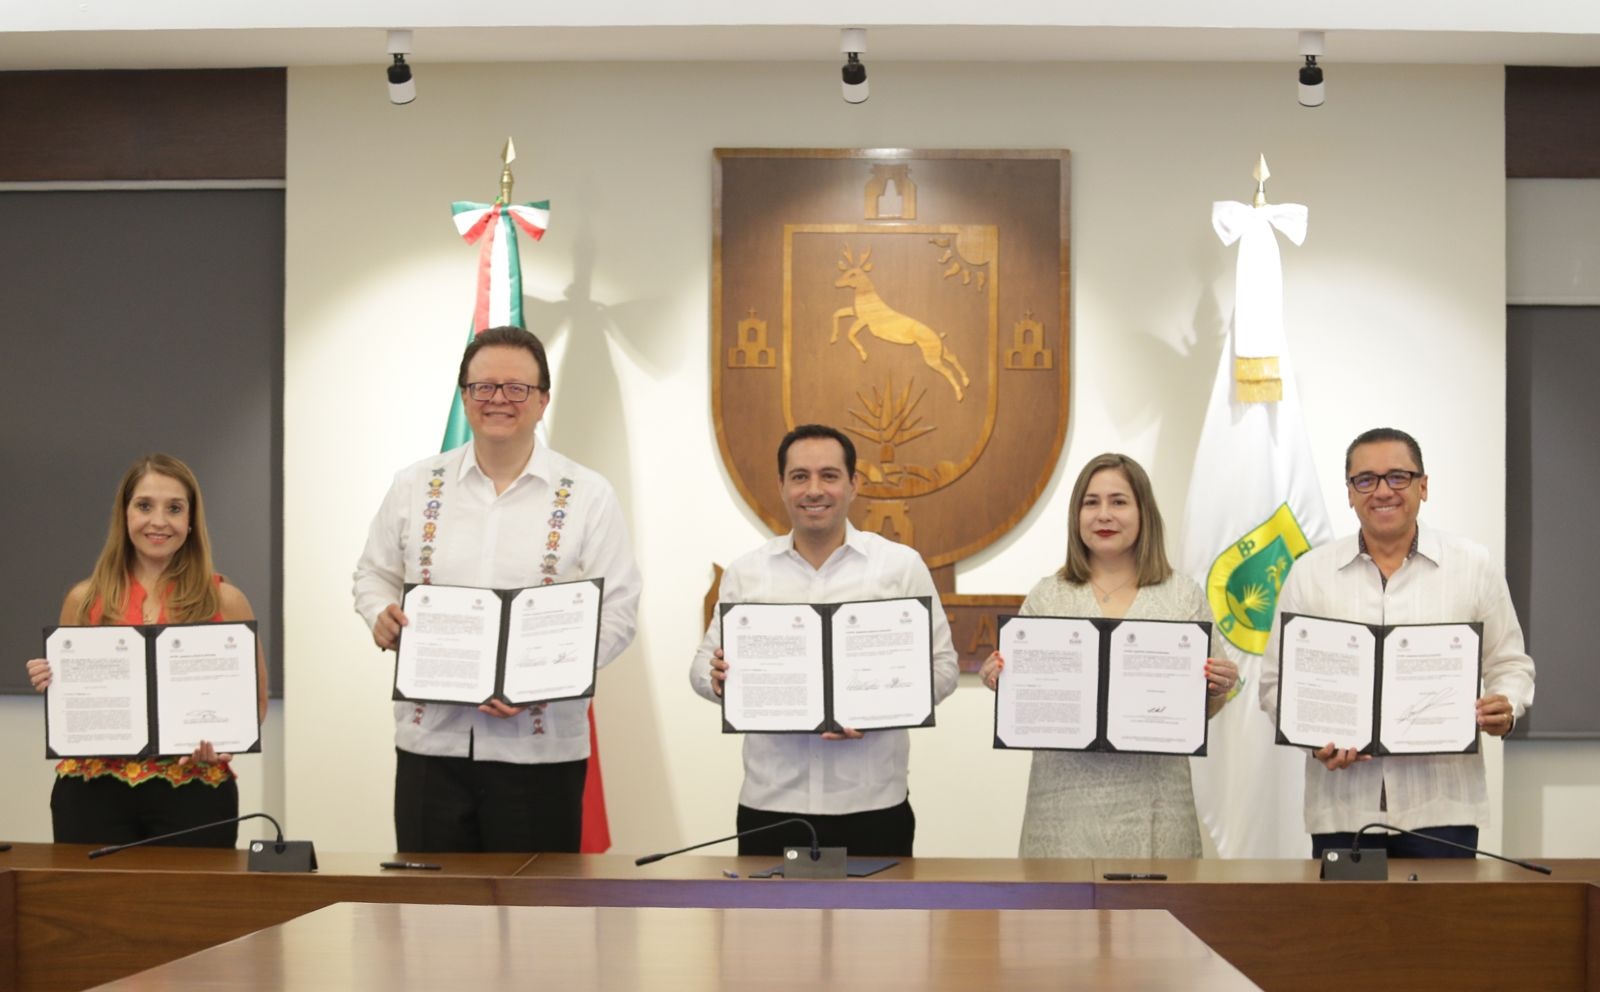 El TEPJF, a través de su Escuela Judicial Electoral, firma Convenio de Colaboración con el gobierno del estado de Yucatán